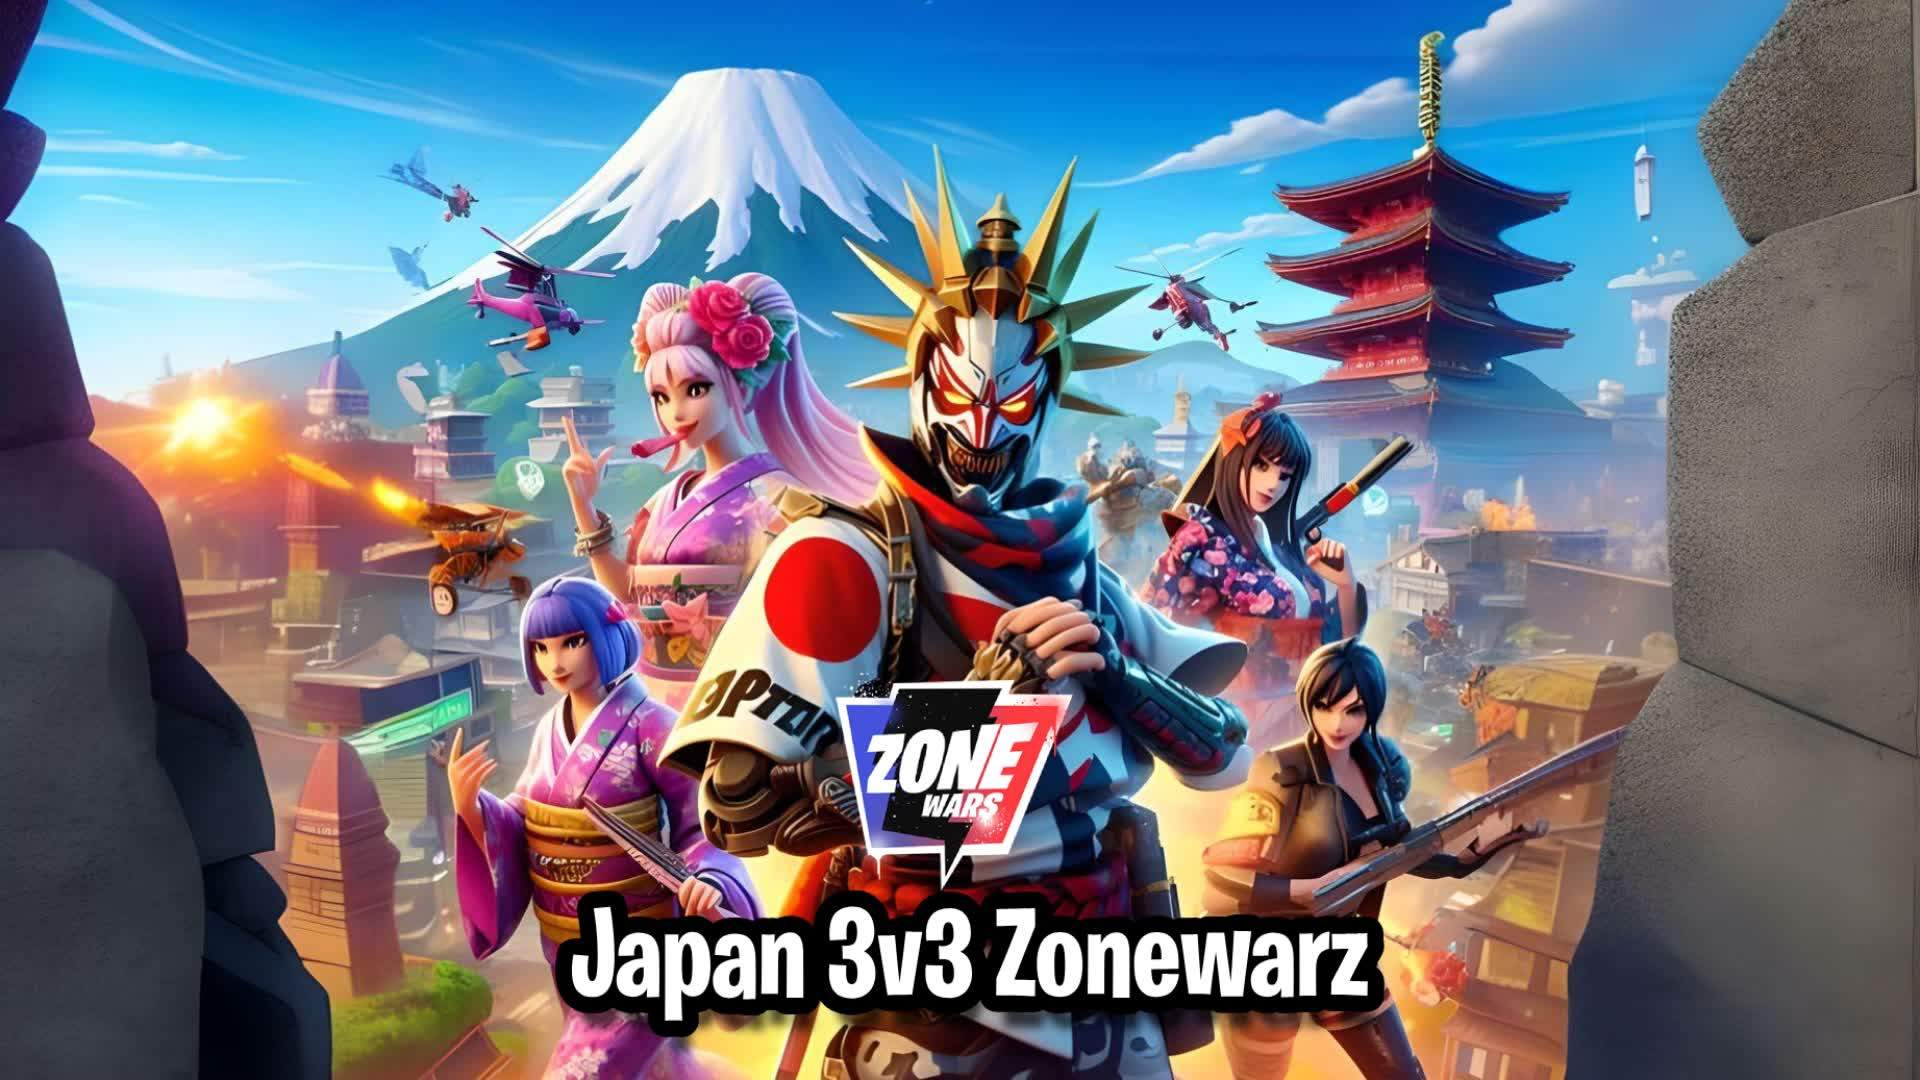 Japan Zonewarz 3v3